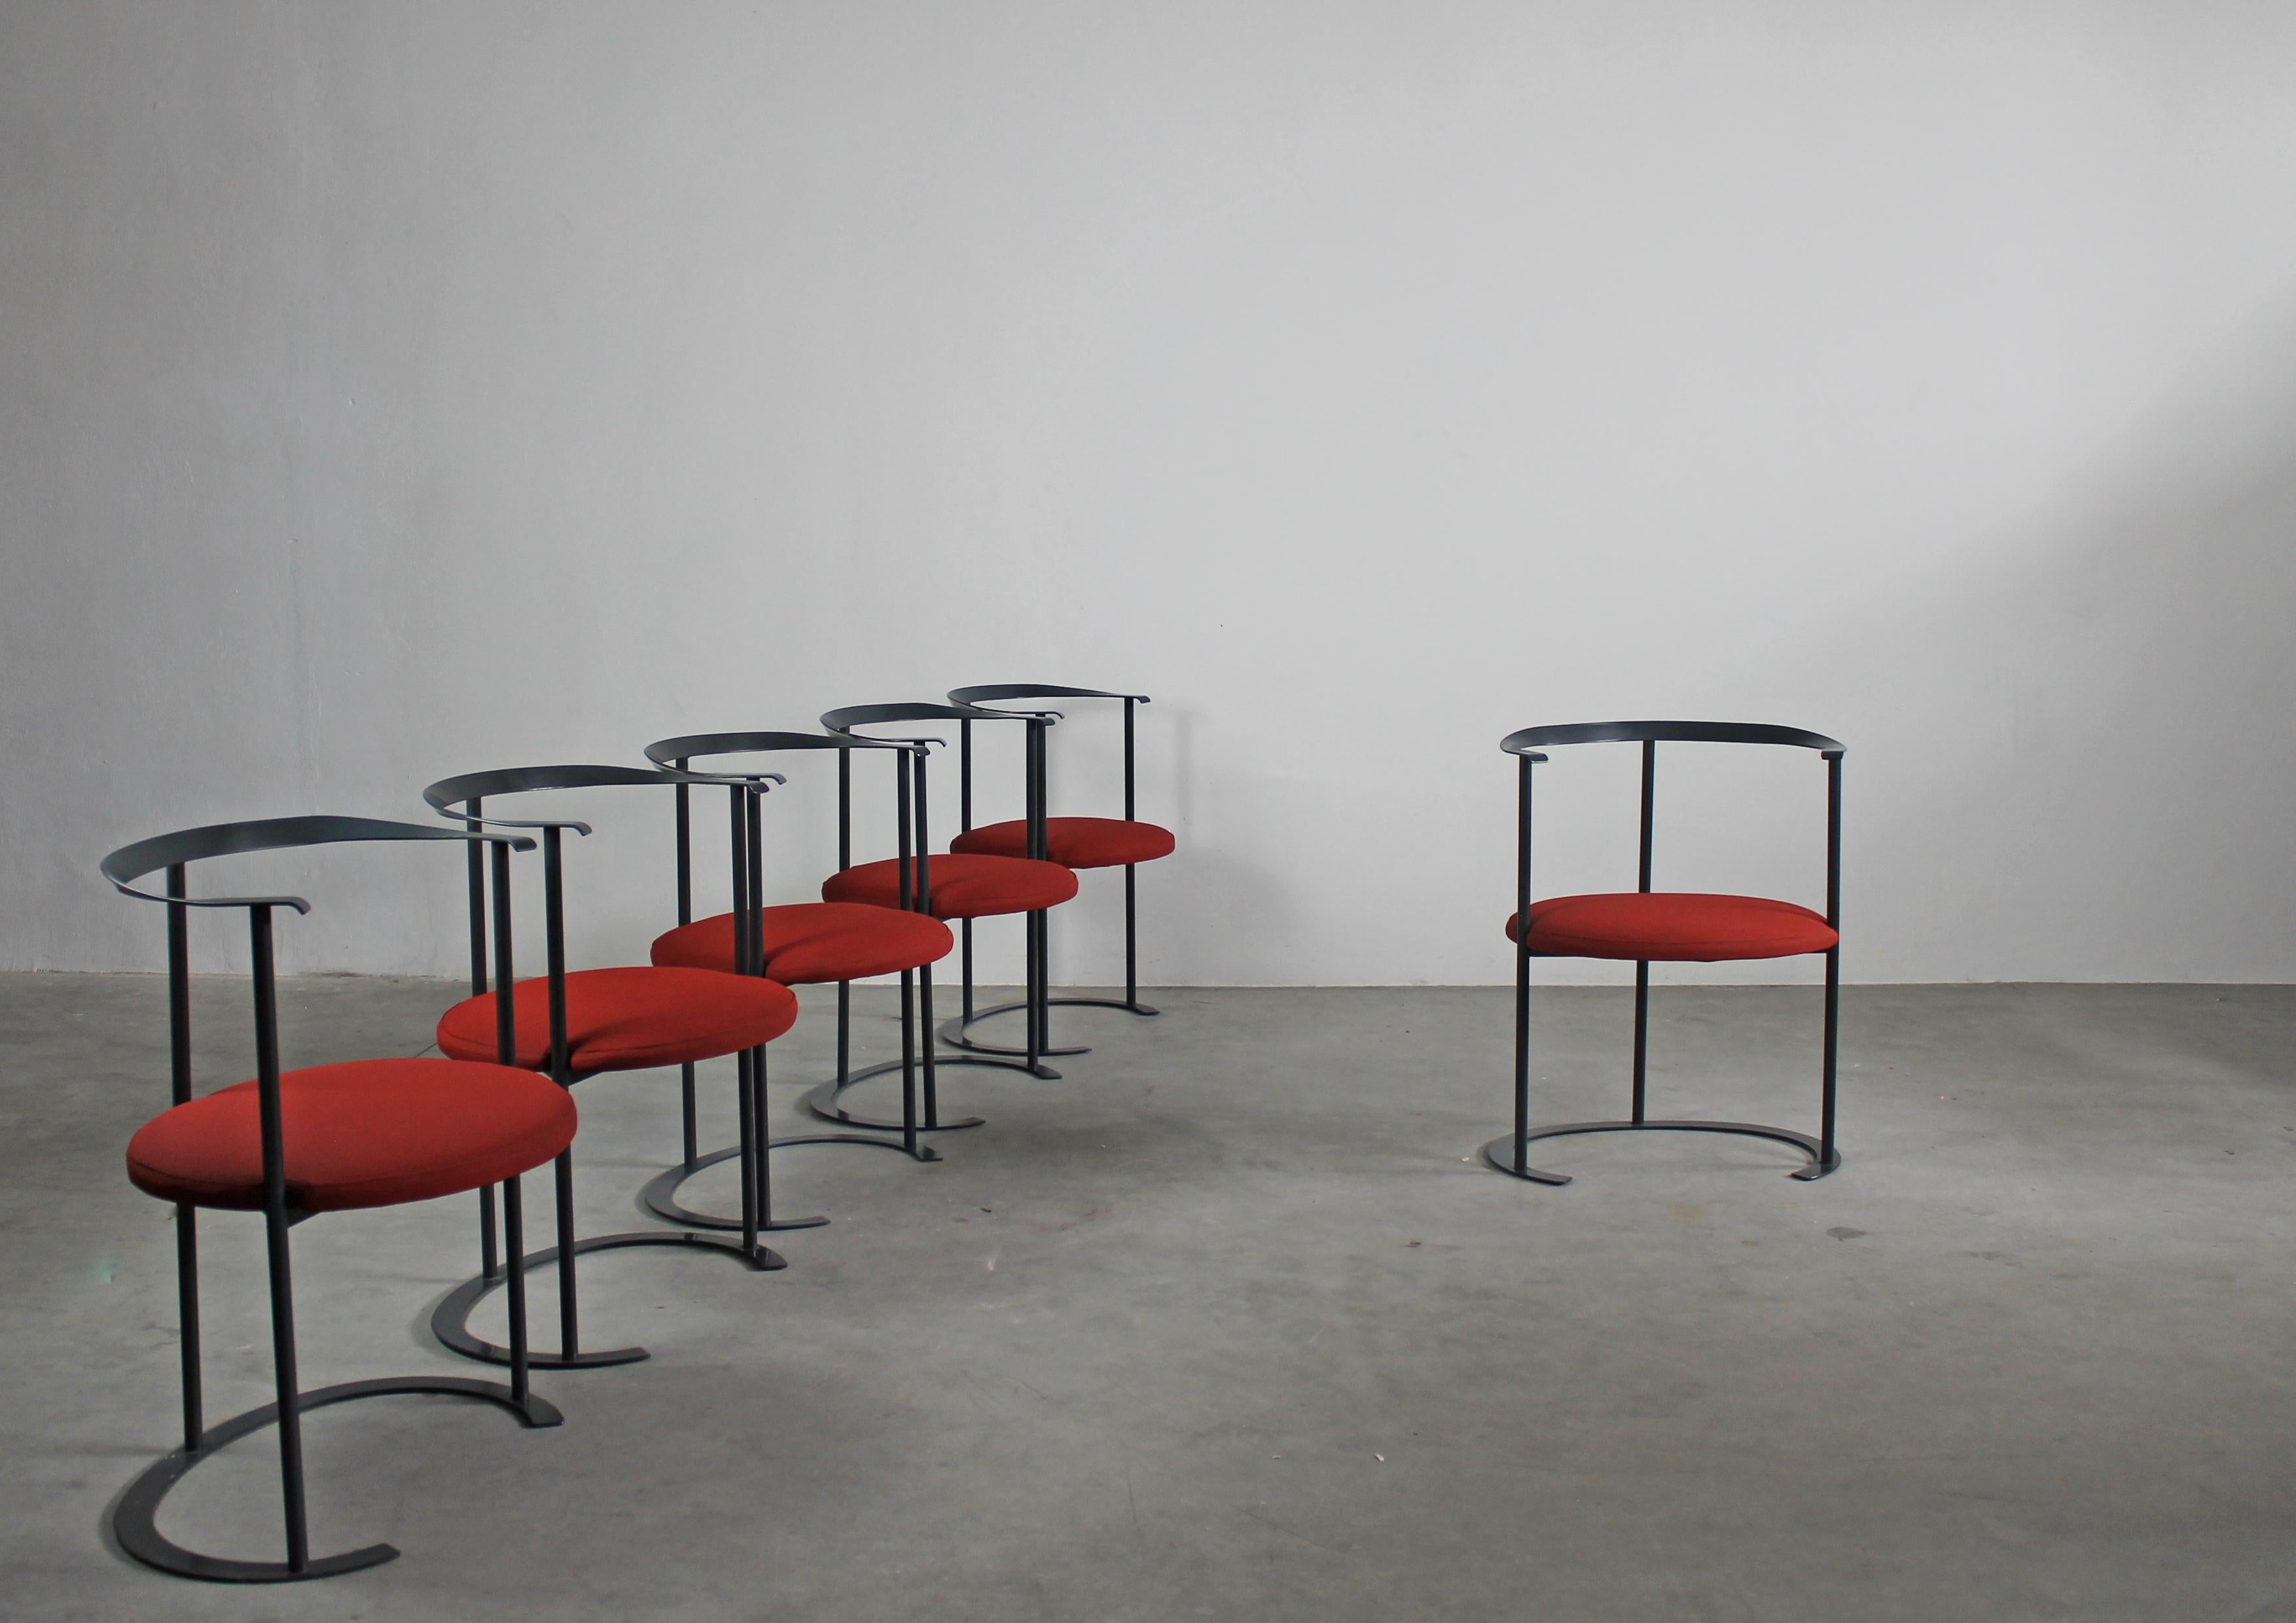 Lot de six chaises Catilina avec structure en acier peint, assise en bois multicouche et coussins en polyuréthane recouverts de tissu rouge. Ce siège emblématique a été conçu par Luigi Caccia Dominioni et produit par Azucena depuis 1958. 
 
Luigi